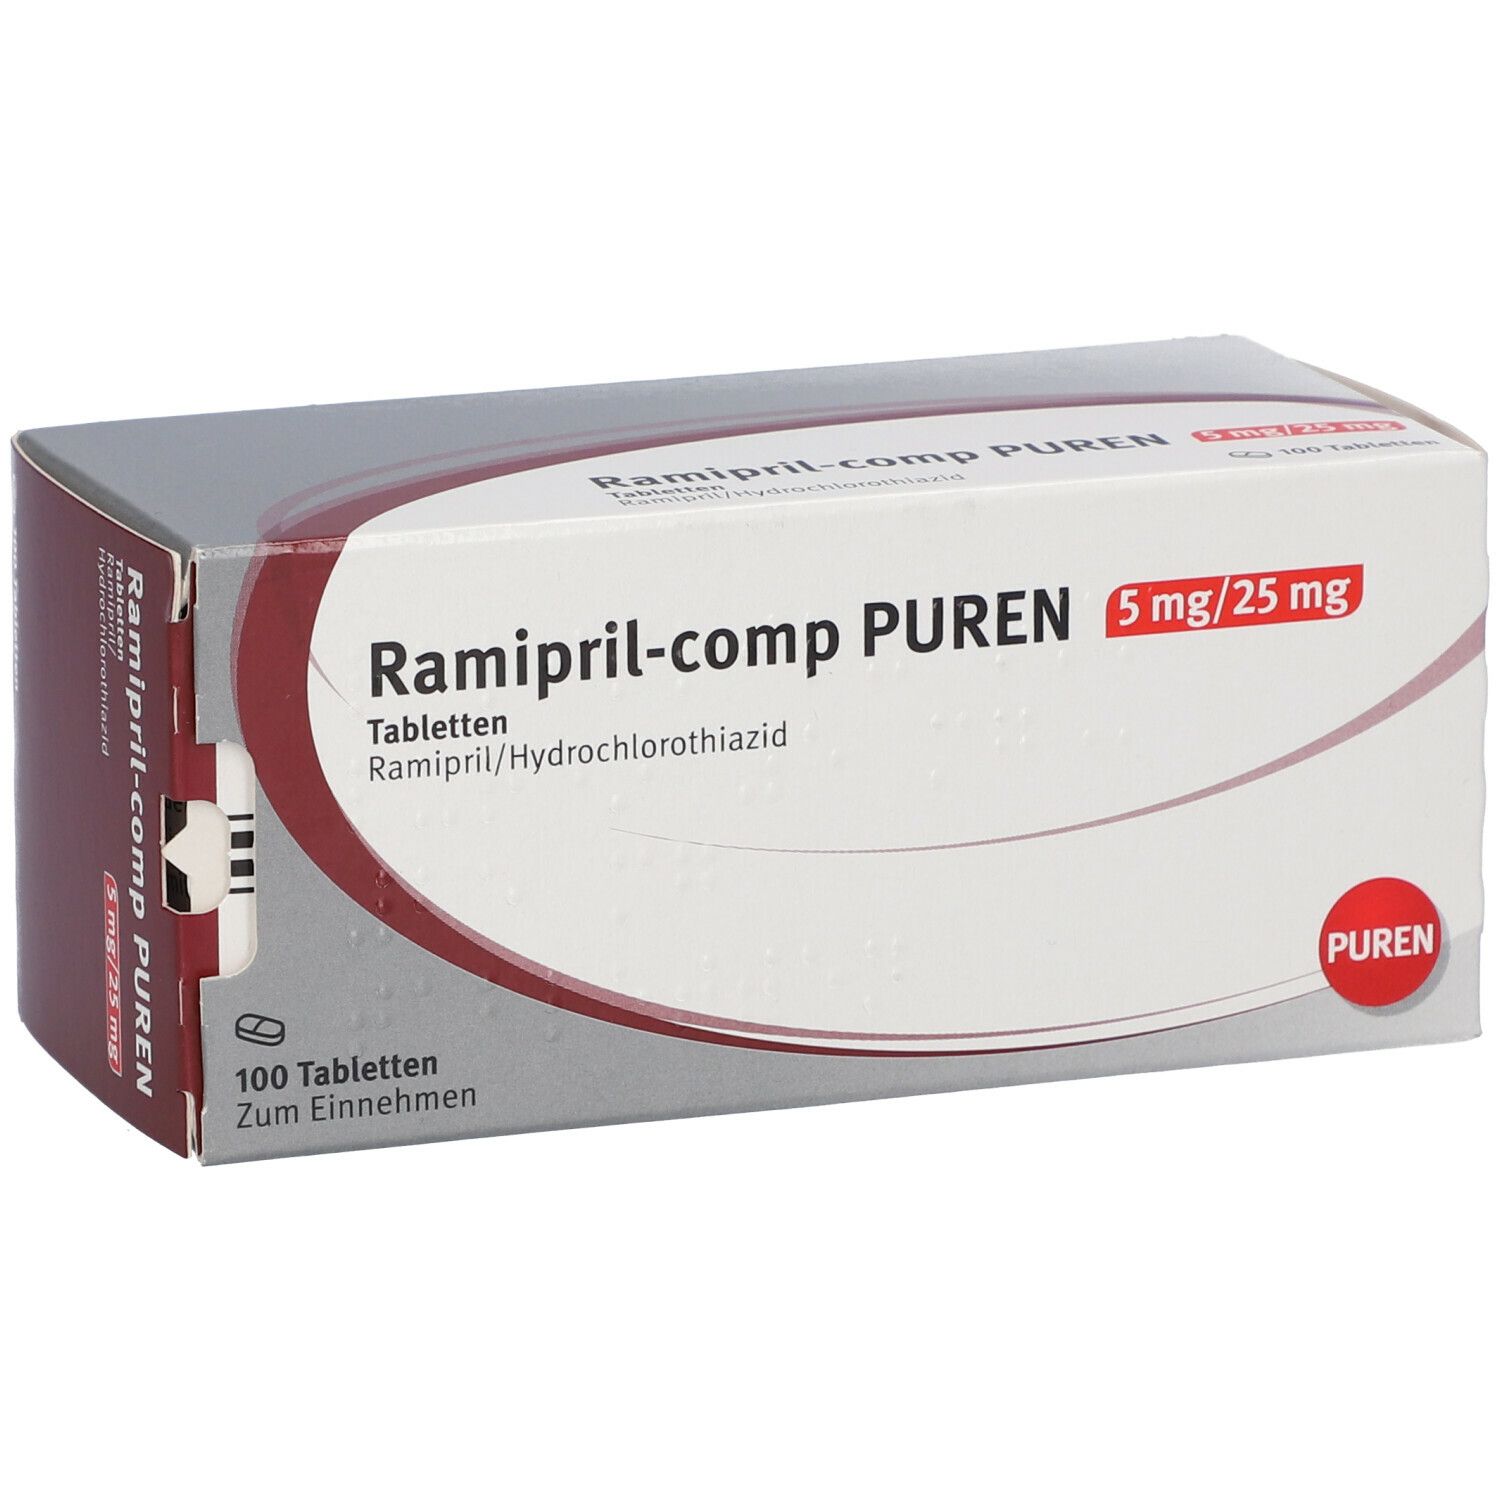 Ramipril-comp PUREN 5 mg/25 mg